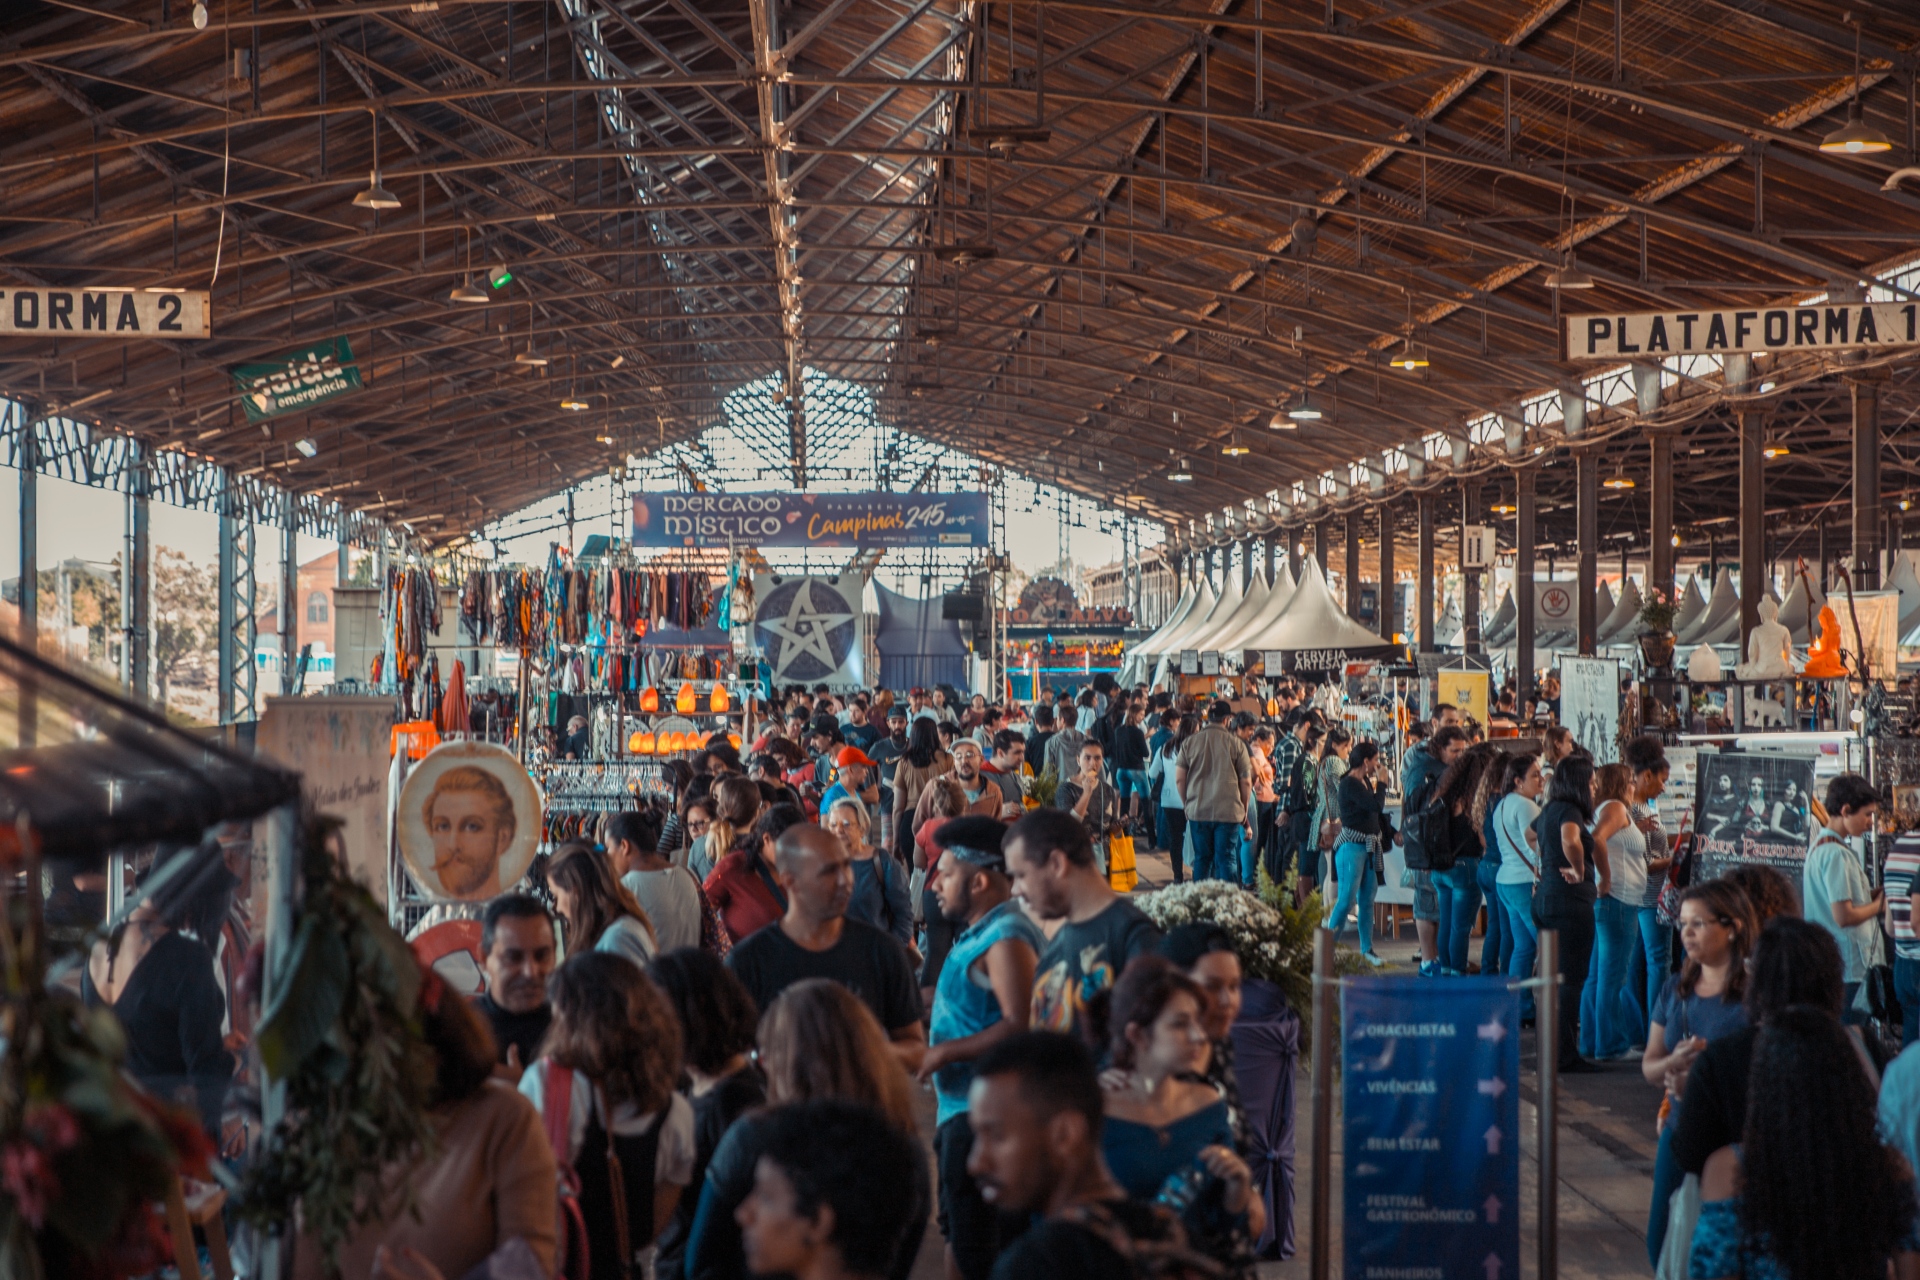 Festival do Pastel Campinas e Feira Mercado Místico